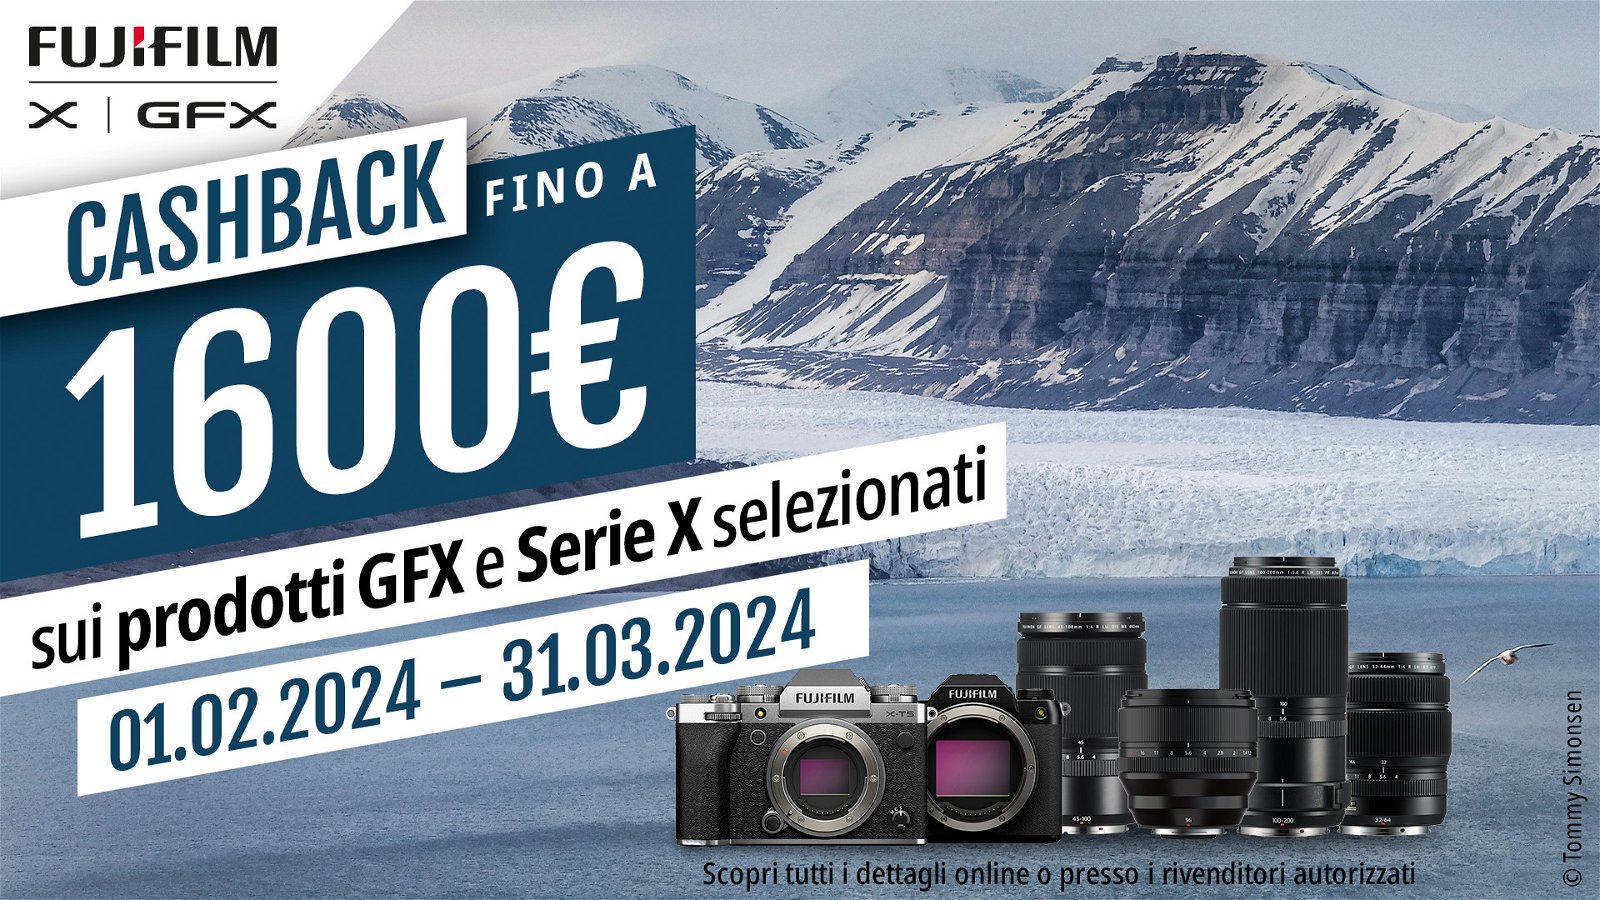 Immagine di Fujifilm: fino a 1600€ di cashback sulla gamma GFX e la Serie X